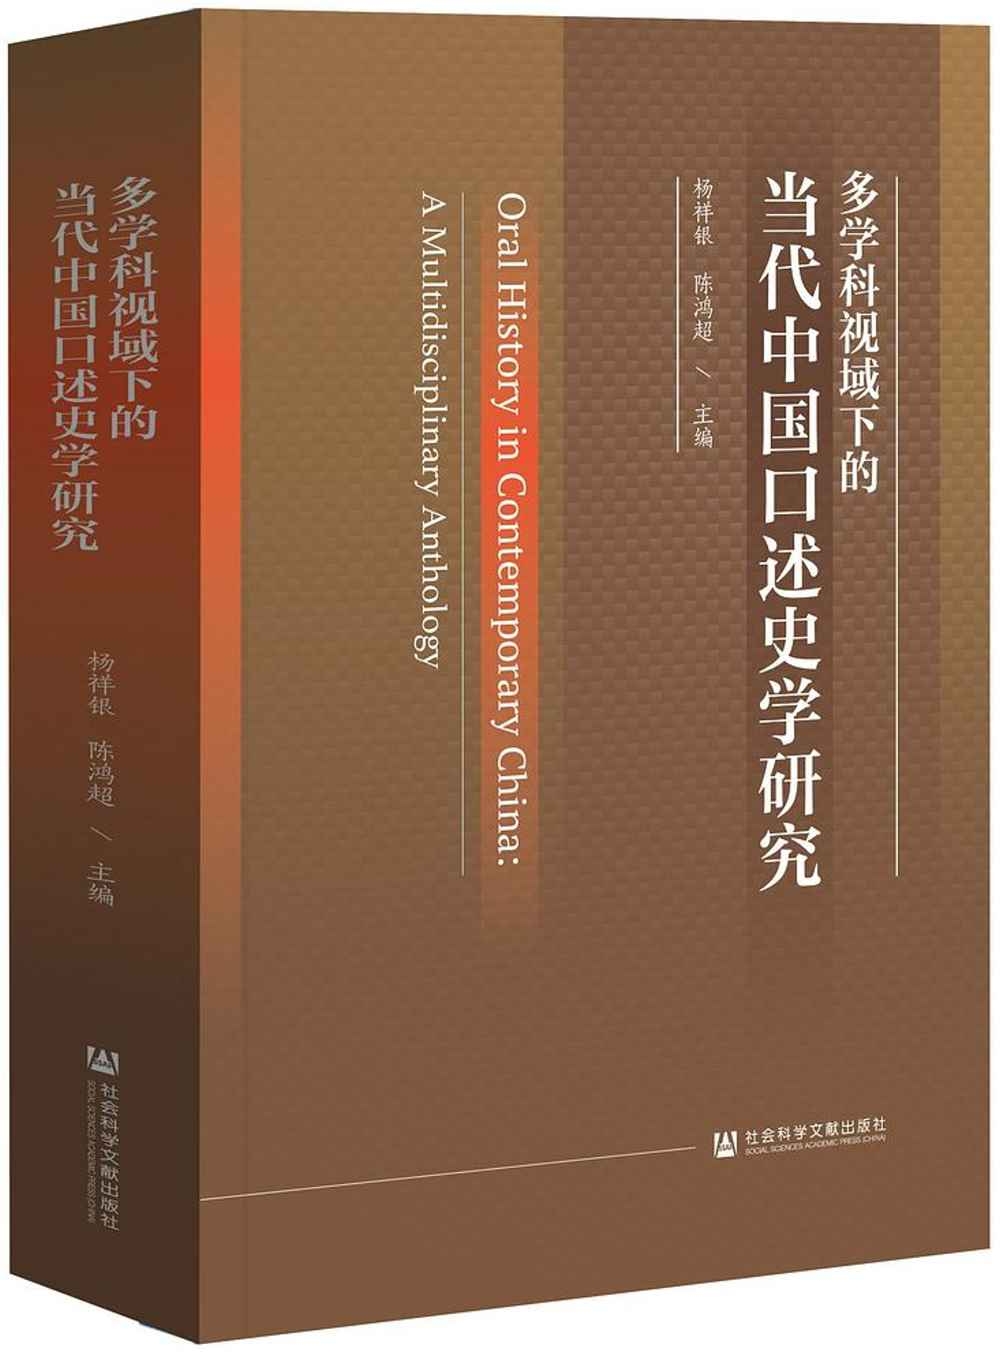 多學科視域下的當代中國口述史學研究